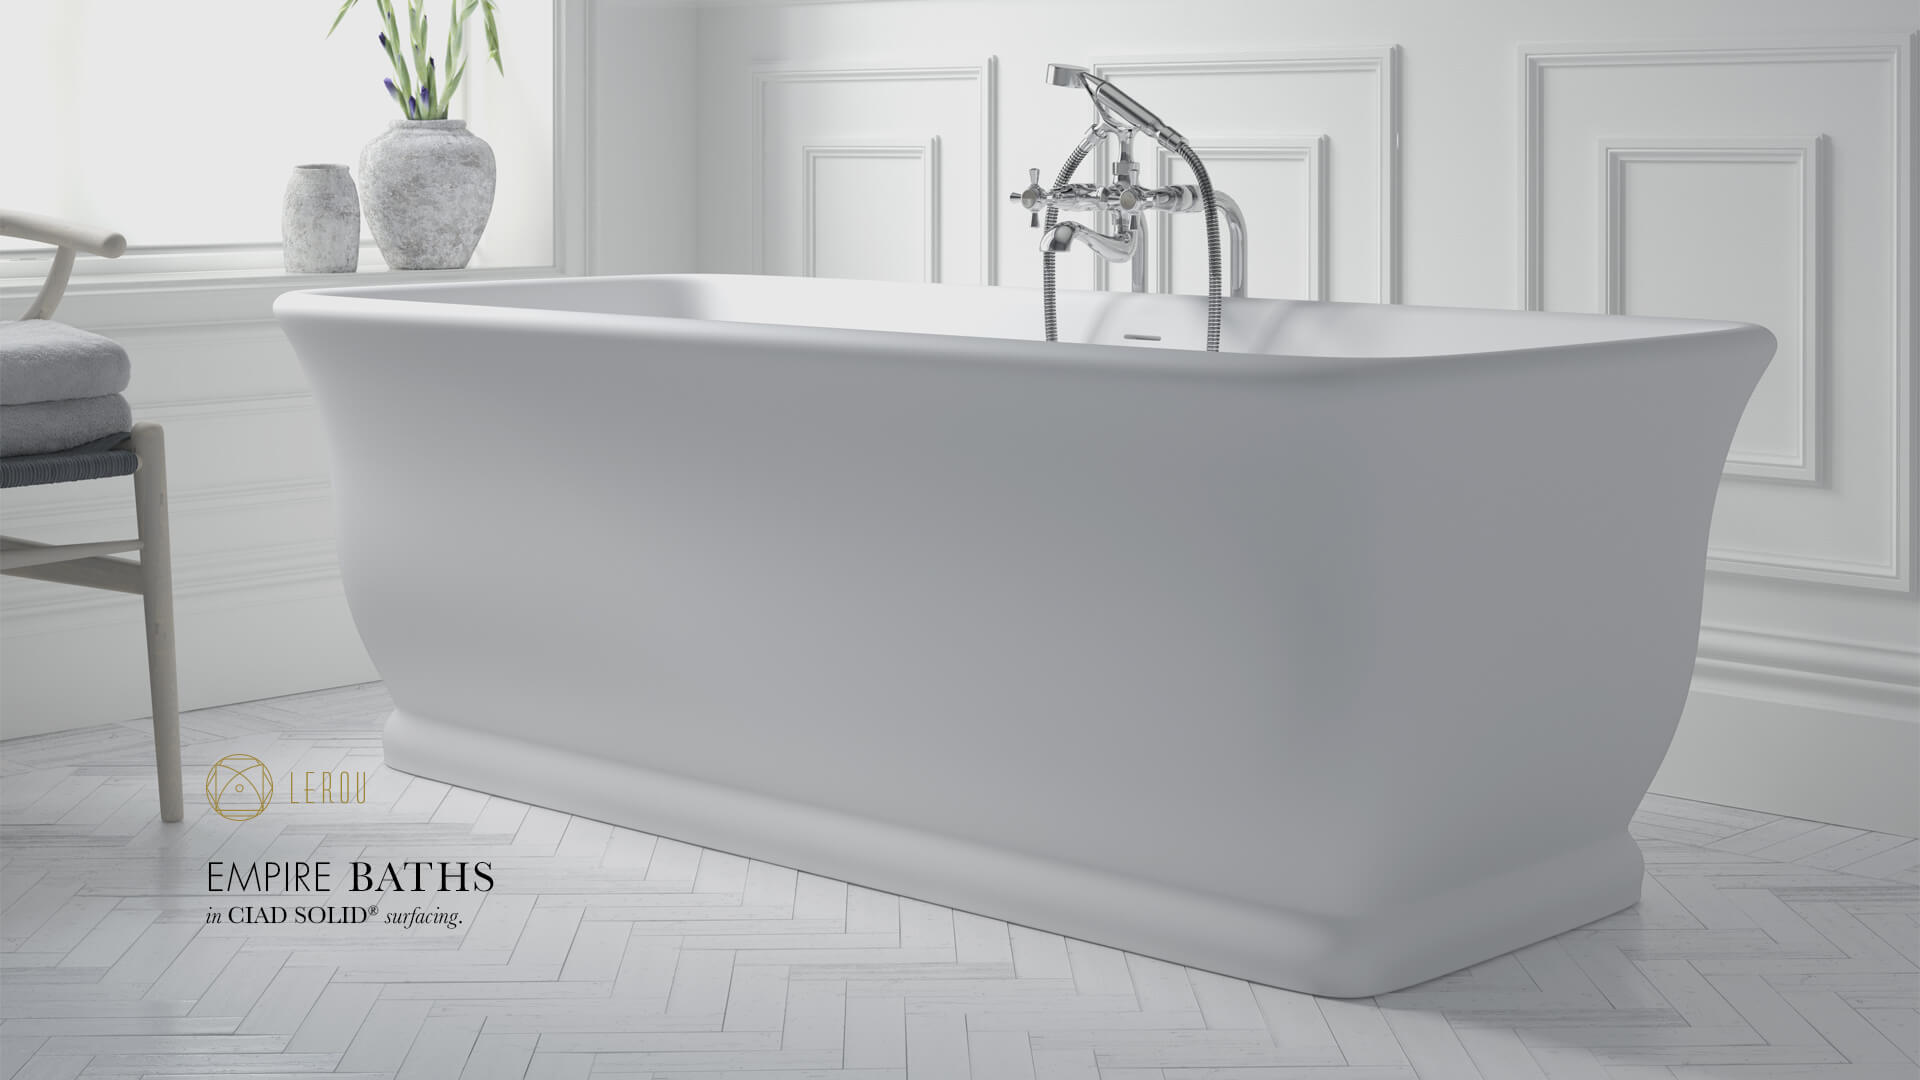 Lerou Empire Baths in CIAD® Solid Surfacing. Lerou vrijstaande Empire baden in CIAD® Solid oppervlakte.